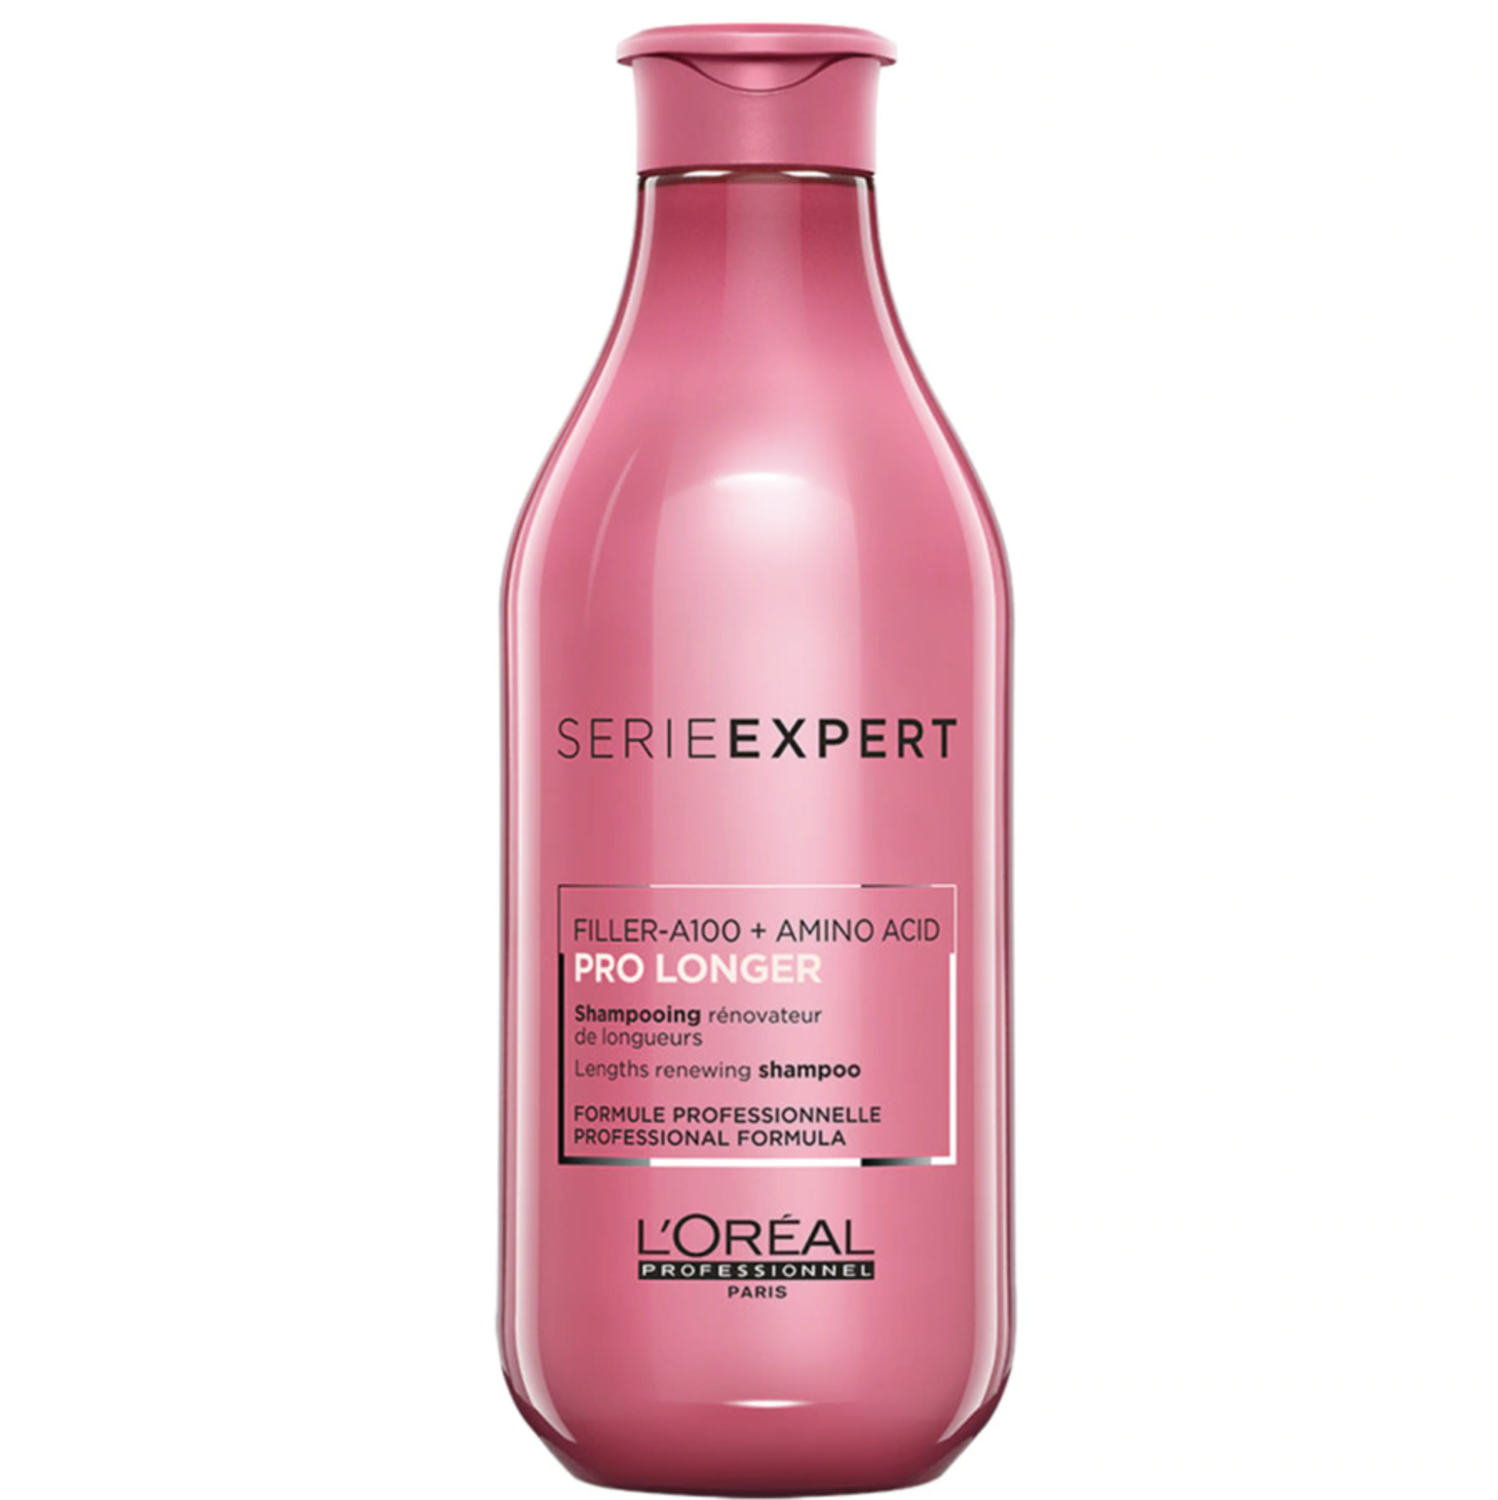 L’Oréal Professionnel Serie Expert Pro Longer -shampoo rinforzante per capelli sani e belli 300ml